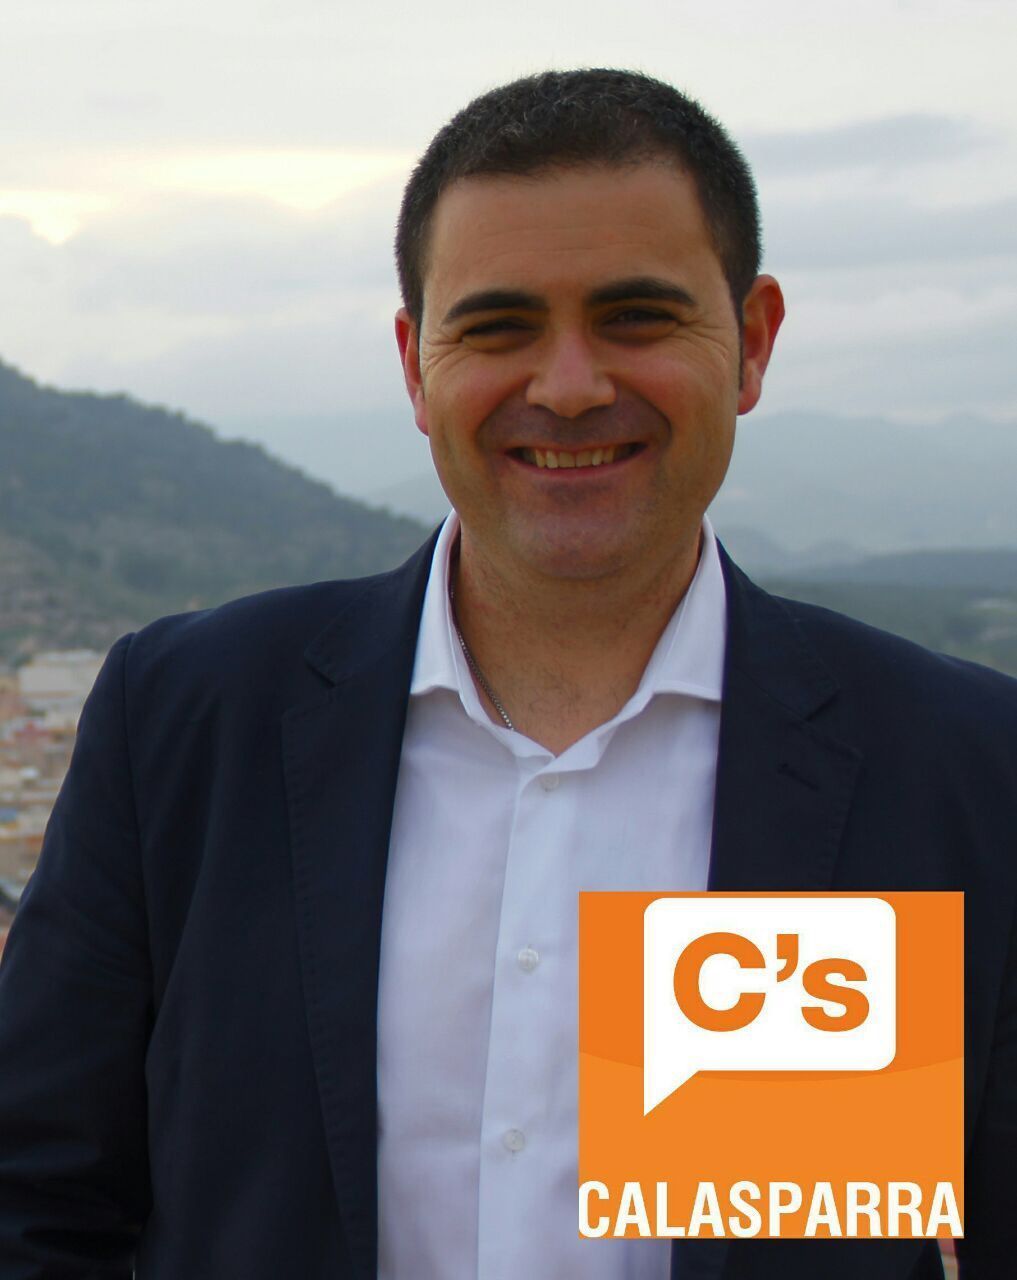 "Es hora de decir alto y claro que Calasparra pertenece por igual a todos los ciudadanos", Jesús Alajarín, candidato de Ciudadanos